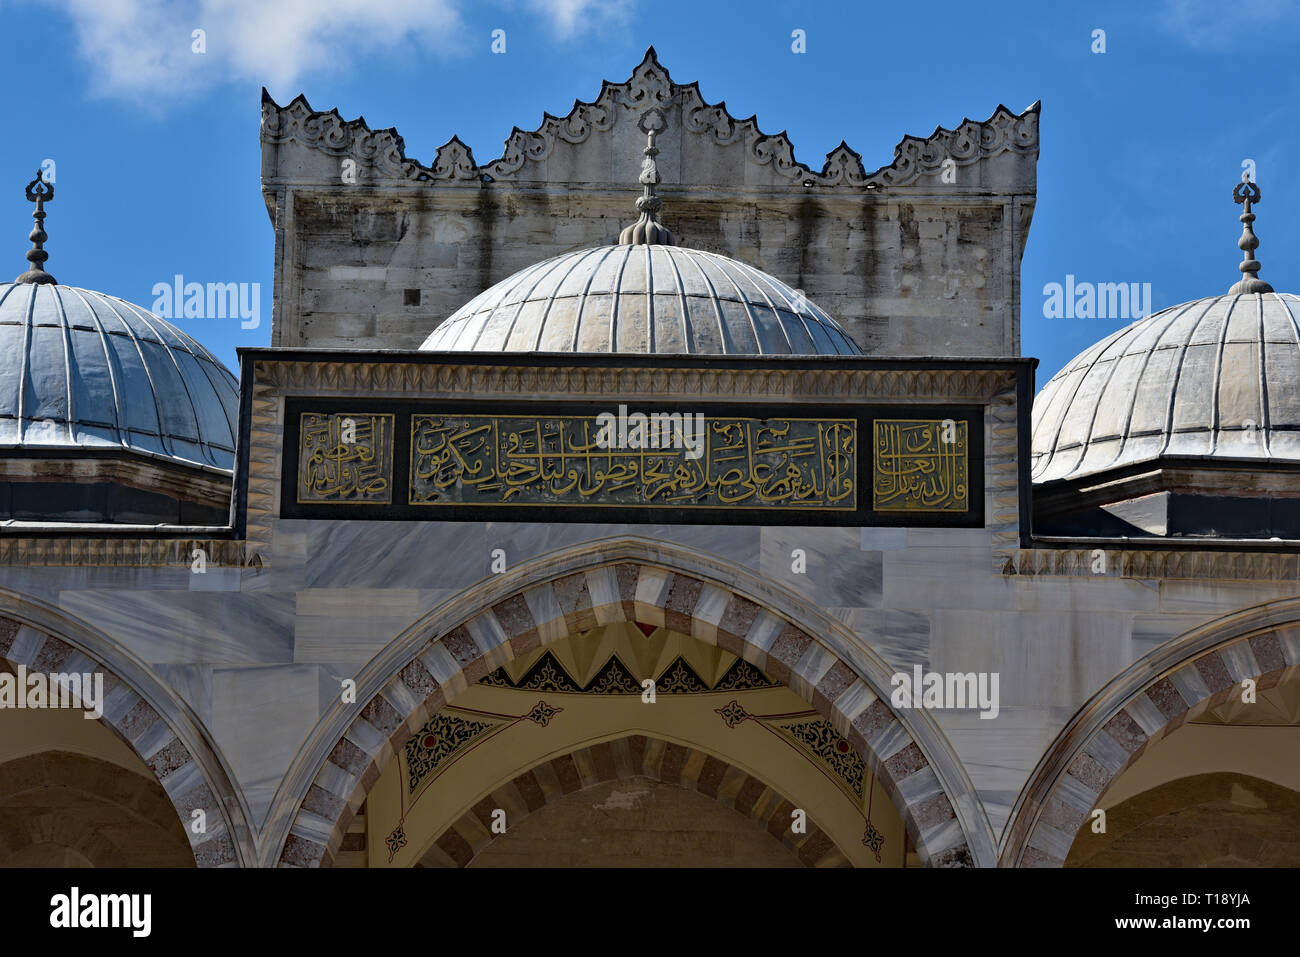 Peristilio dettagli e iscrizioni arabo al di sopra del portale nord della Moschea Süleymaniye, il Bazar trimestre, Istanbul, Turchia, l'Europa. Foto Stock